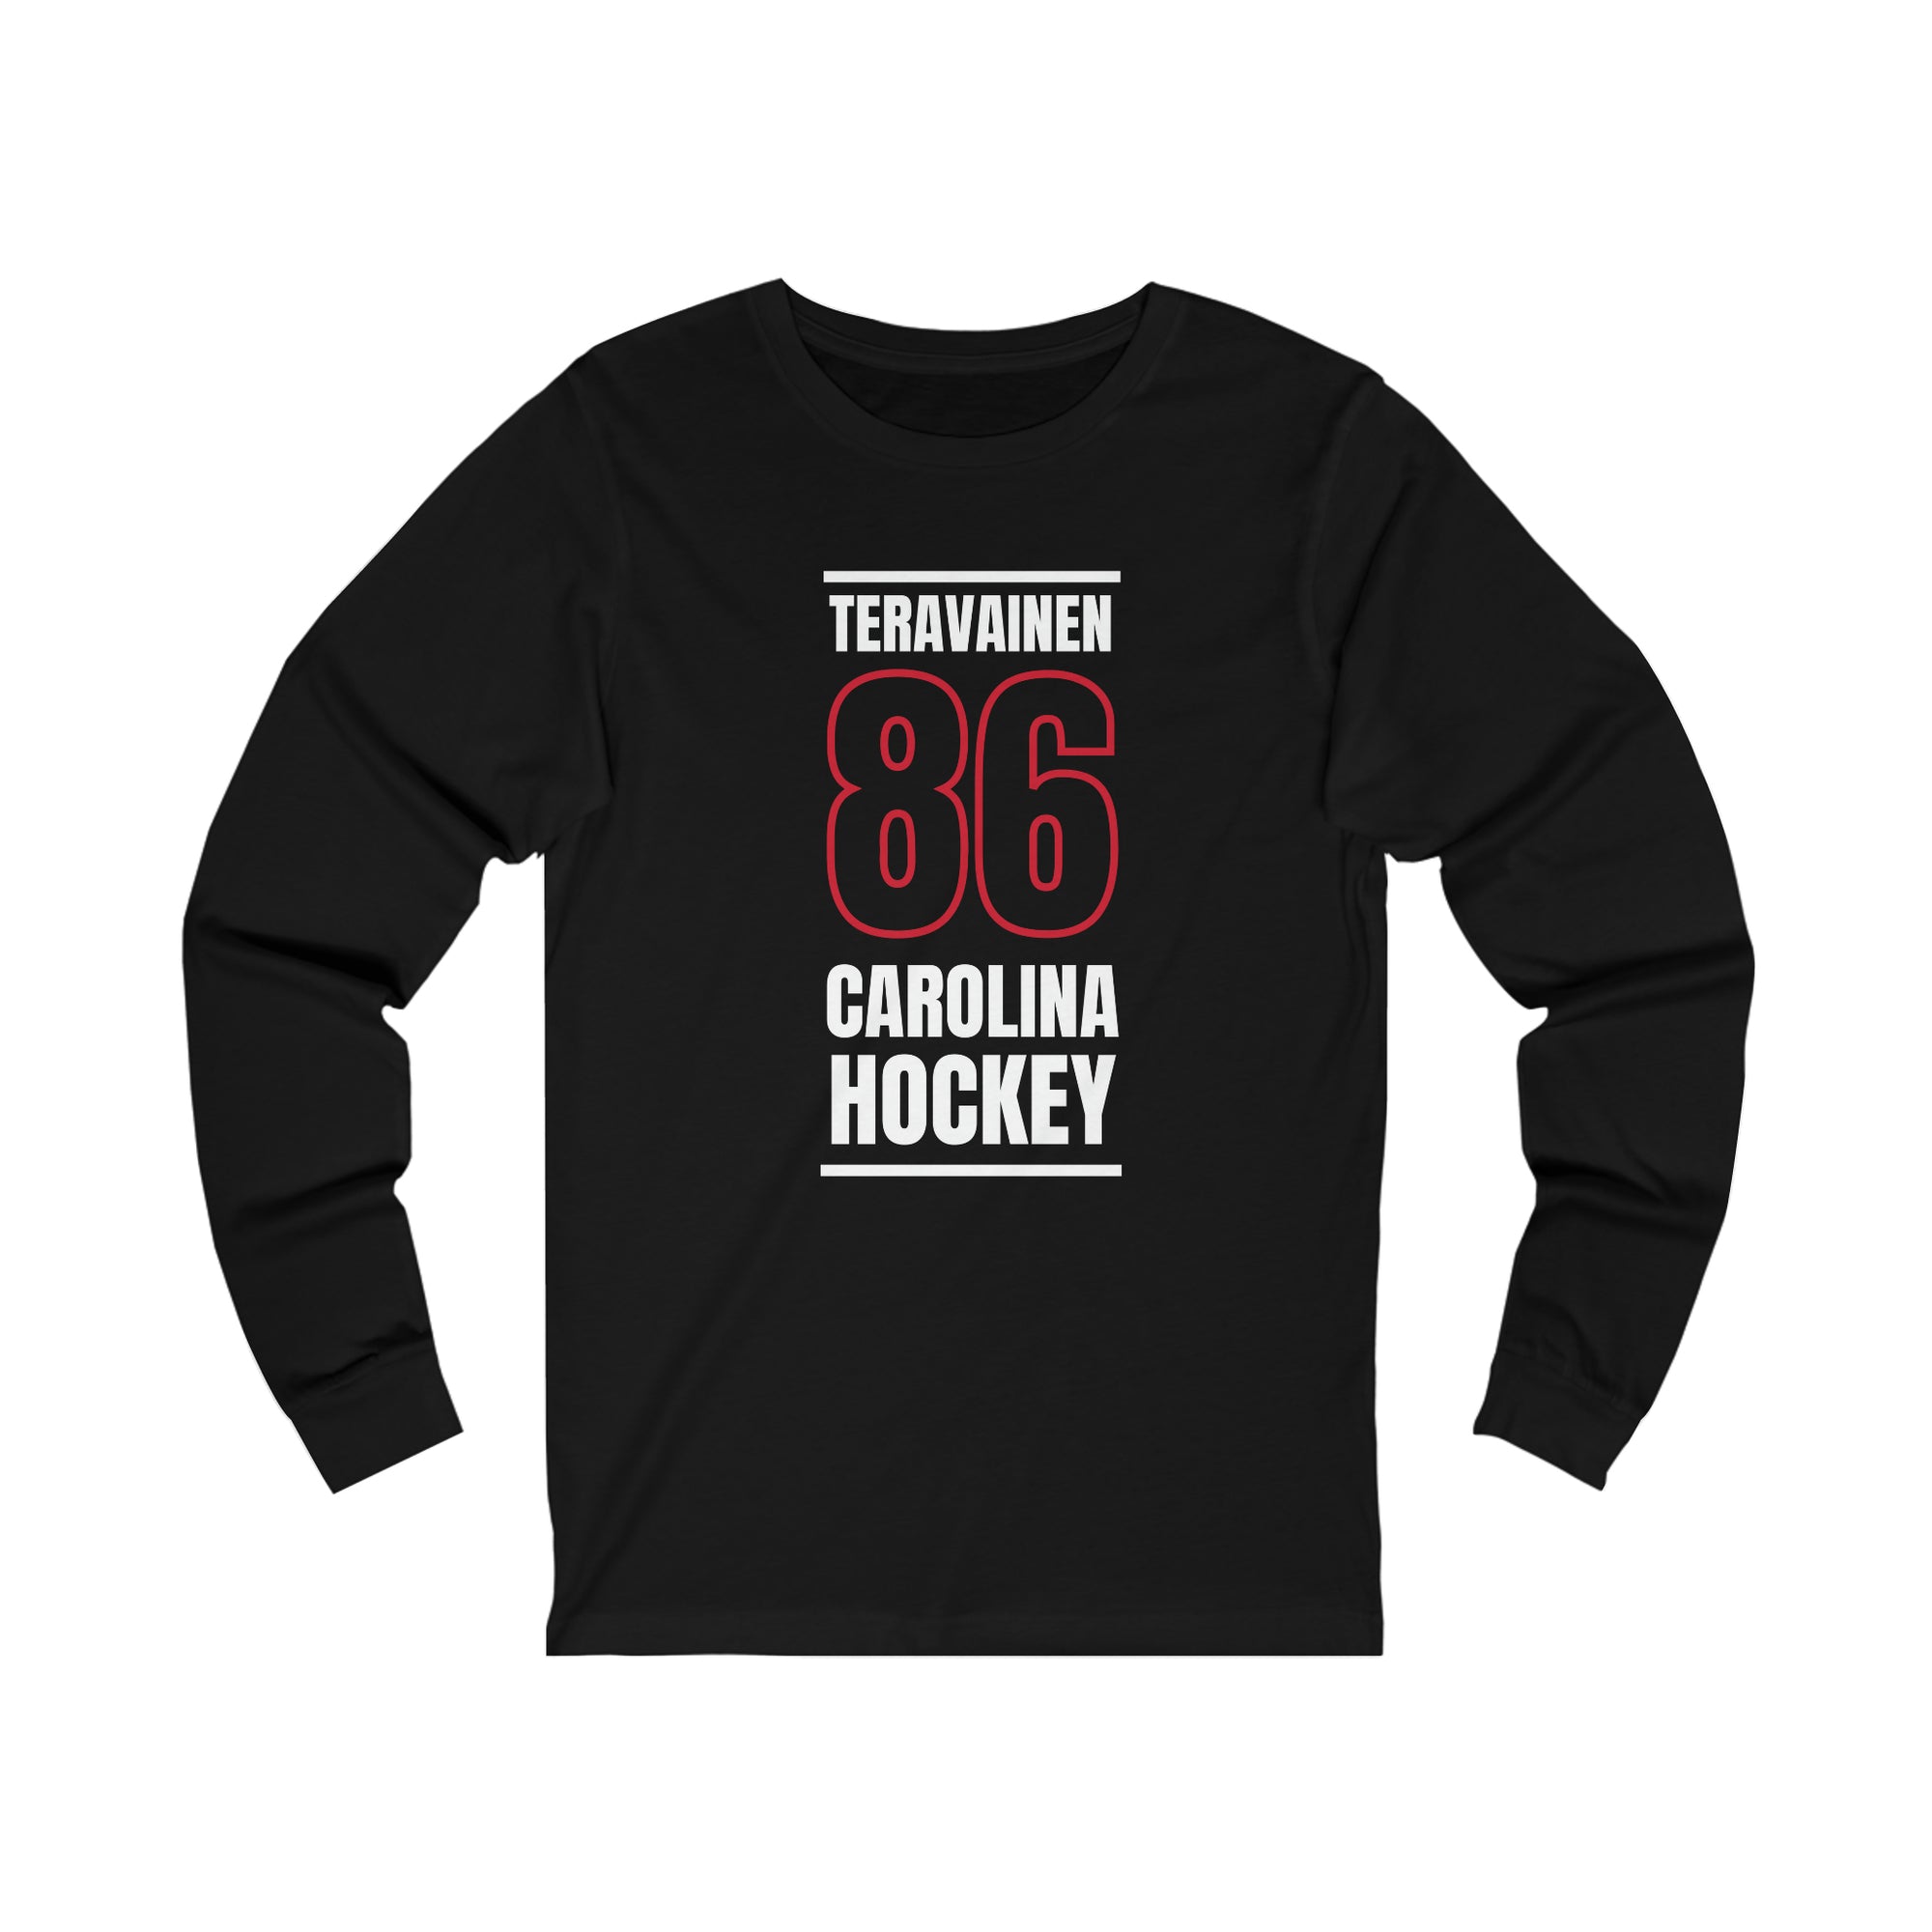 Teravainen 86 Carolina Hockey Black Vertical Design Unisex Jersey Long Sleeve Shirt